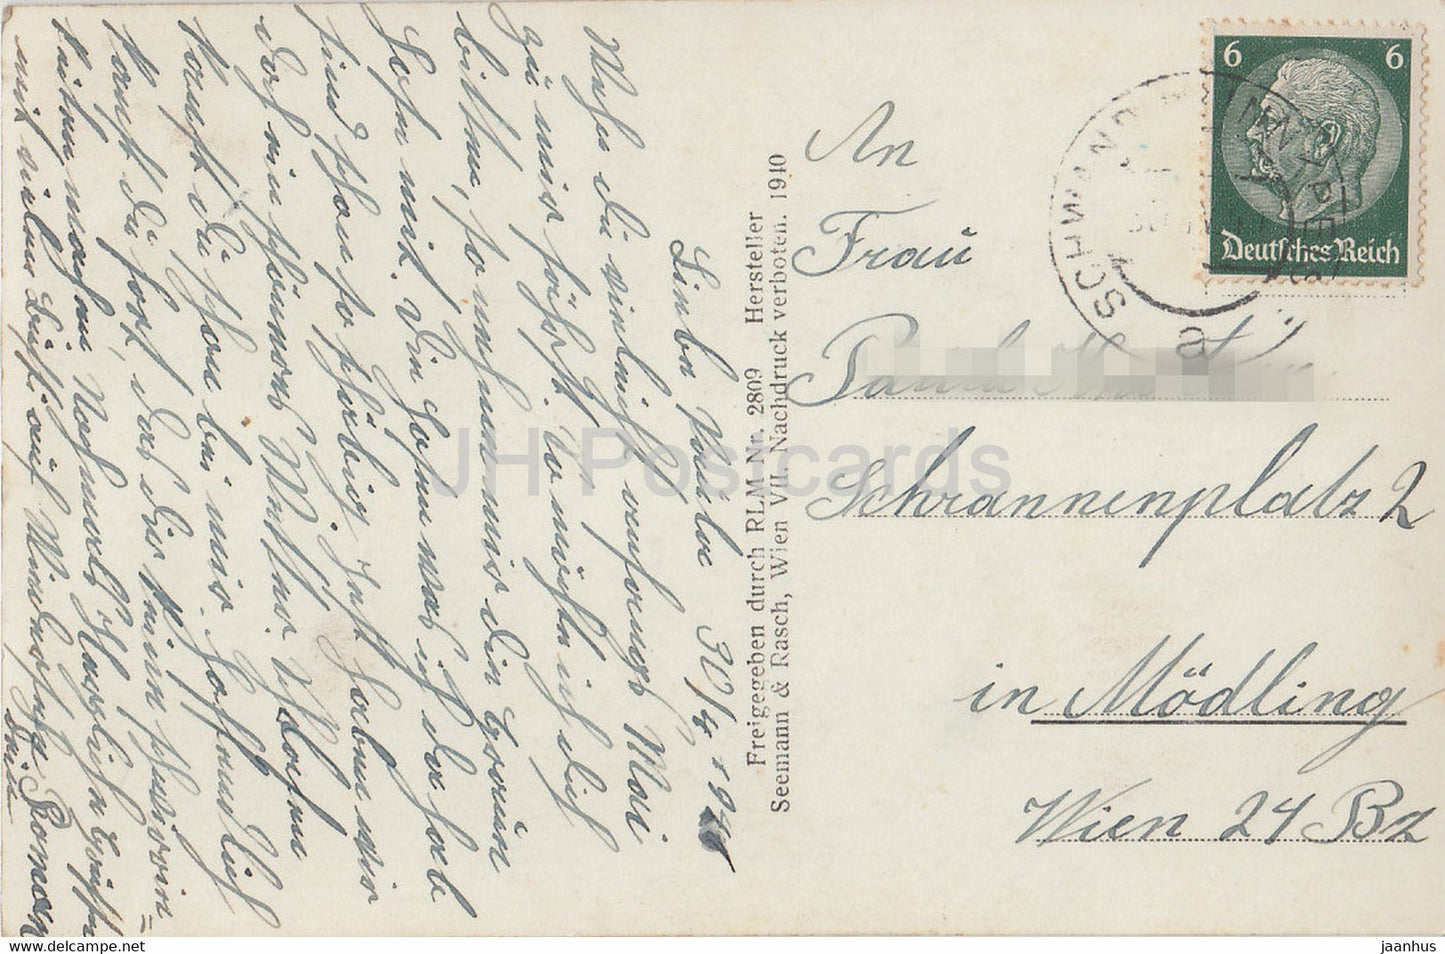 Fliegeraufnahme - Schwand im Innkreis - 2809 - old postcard - 1941 - Austria - used